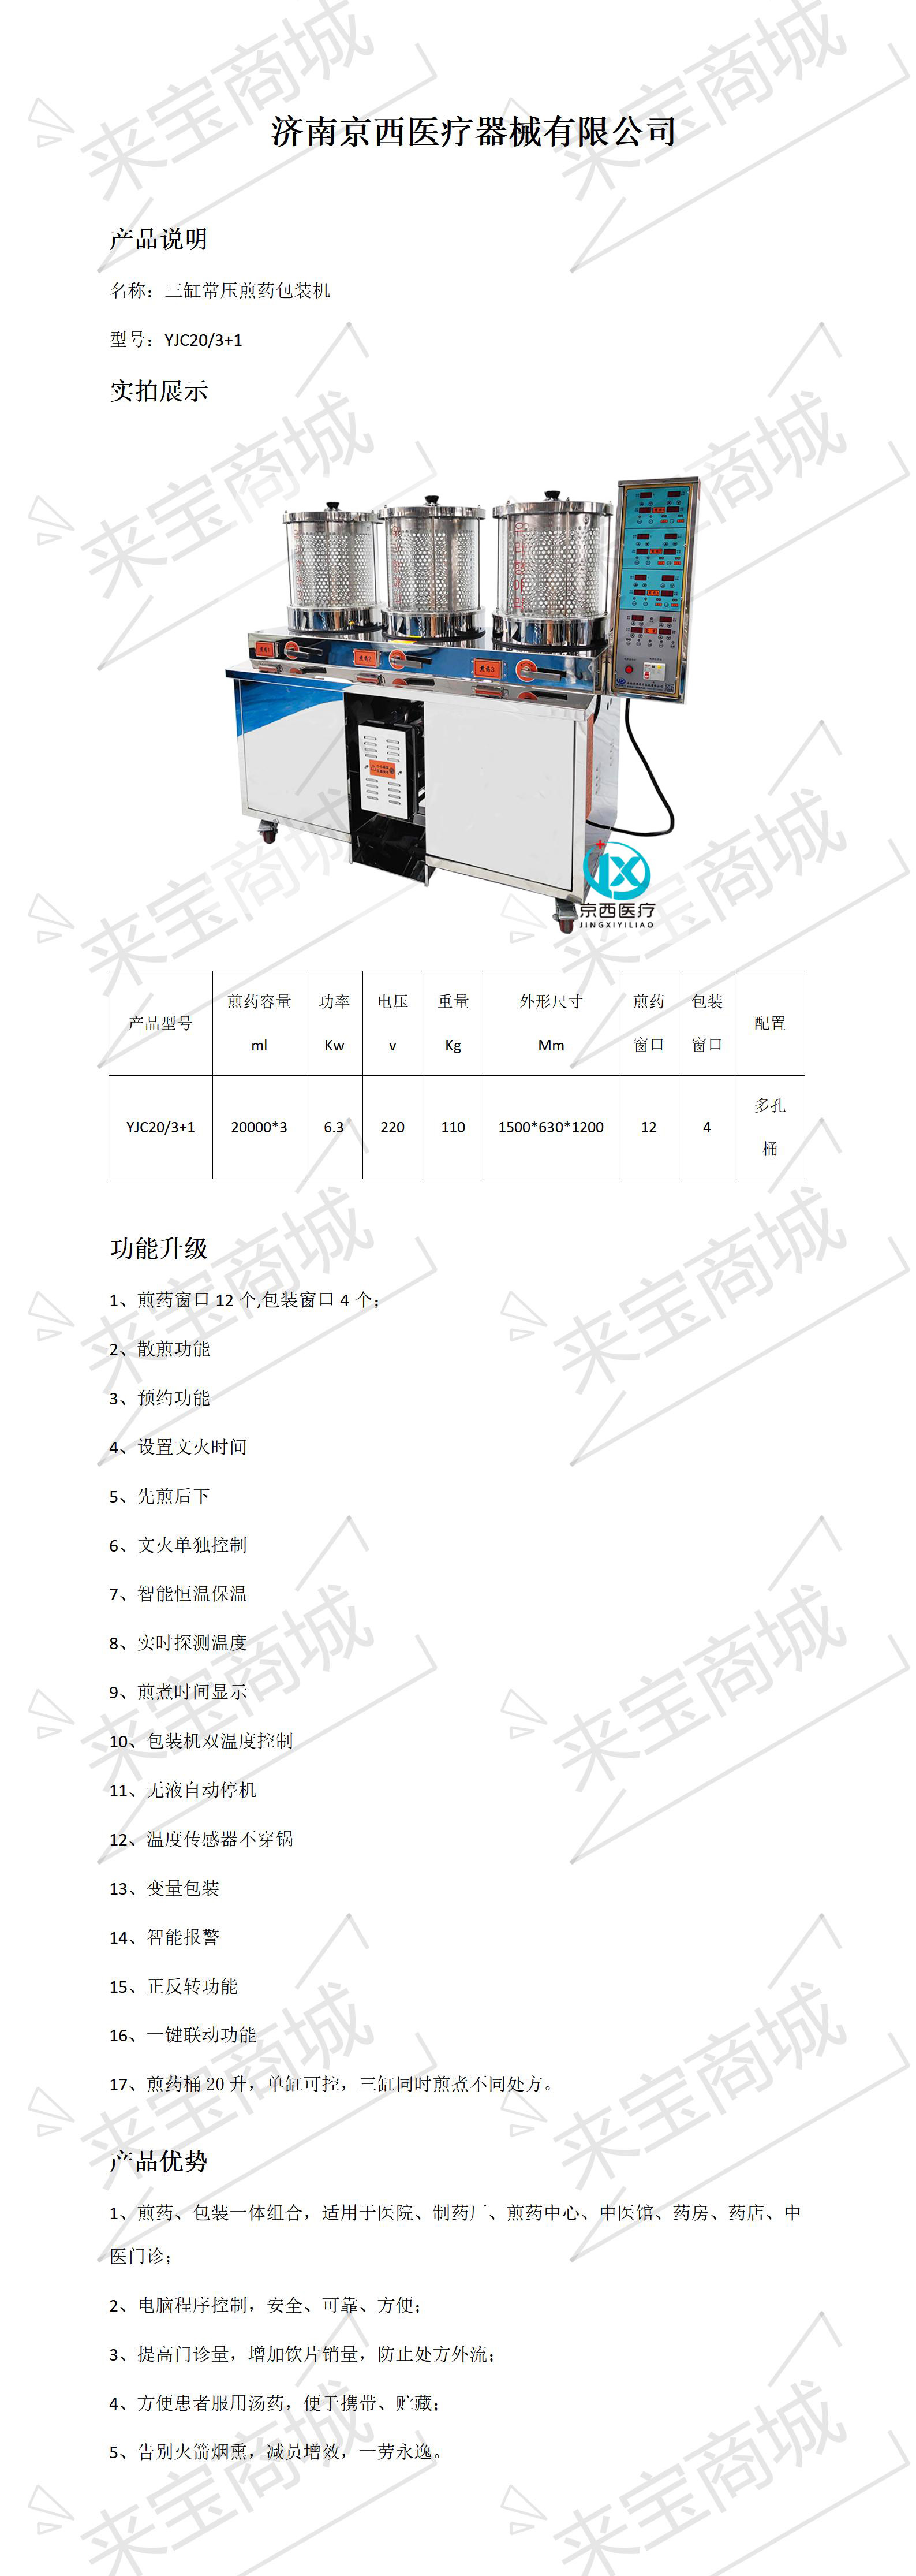 京西 三缸常压煎药包装机 YJC20-3+1.jpg